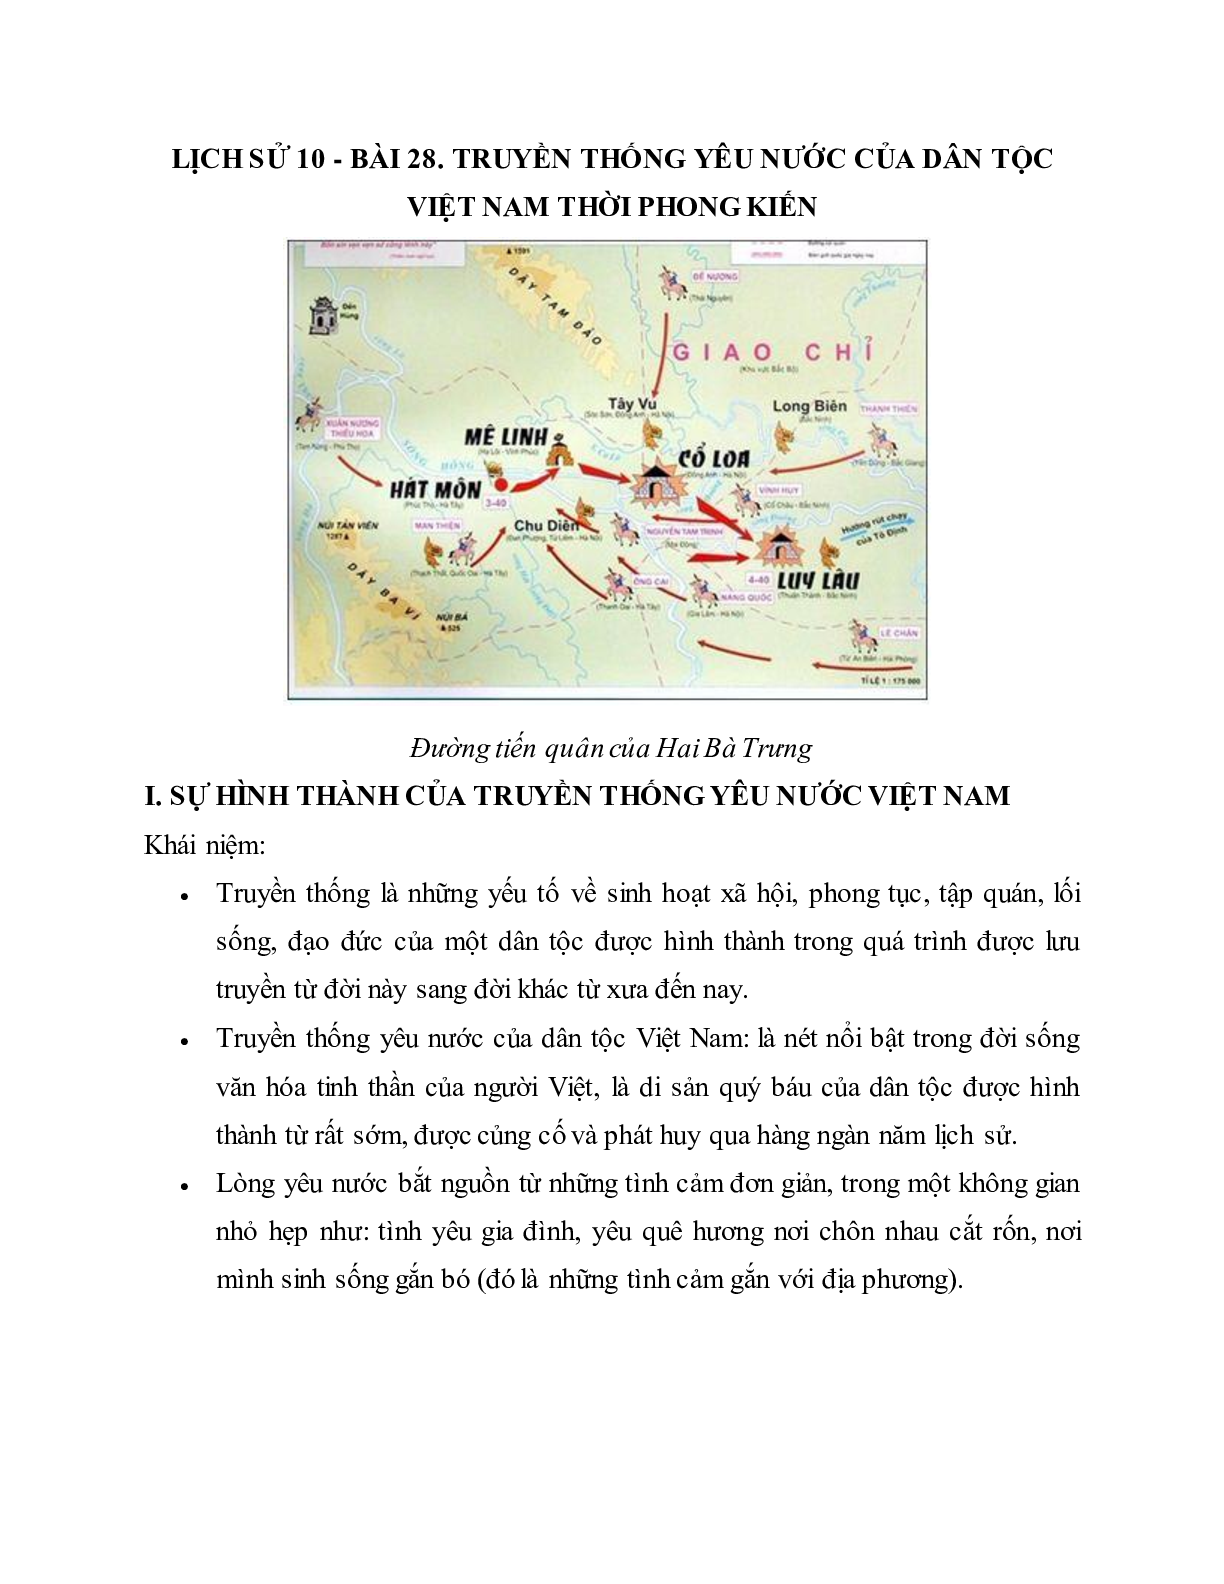 Lý thuyết Lịch sử 10: Bài 28: Truyền thống yêu nước của dân tộc Việt Nam thời phong kiến mới nhất (trang 1)